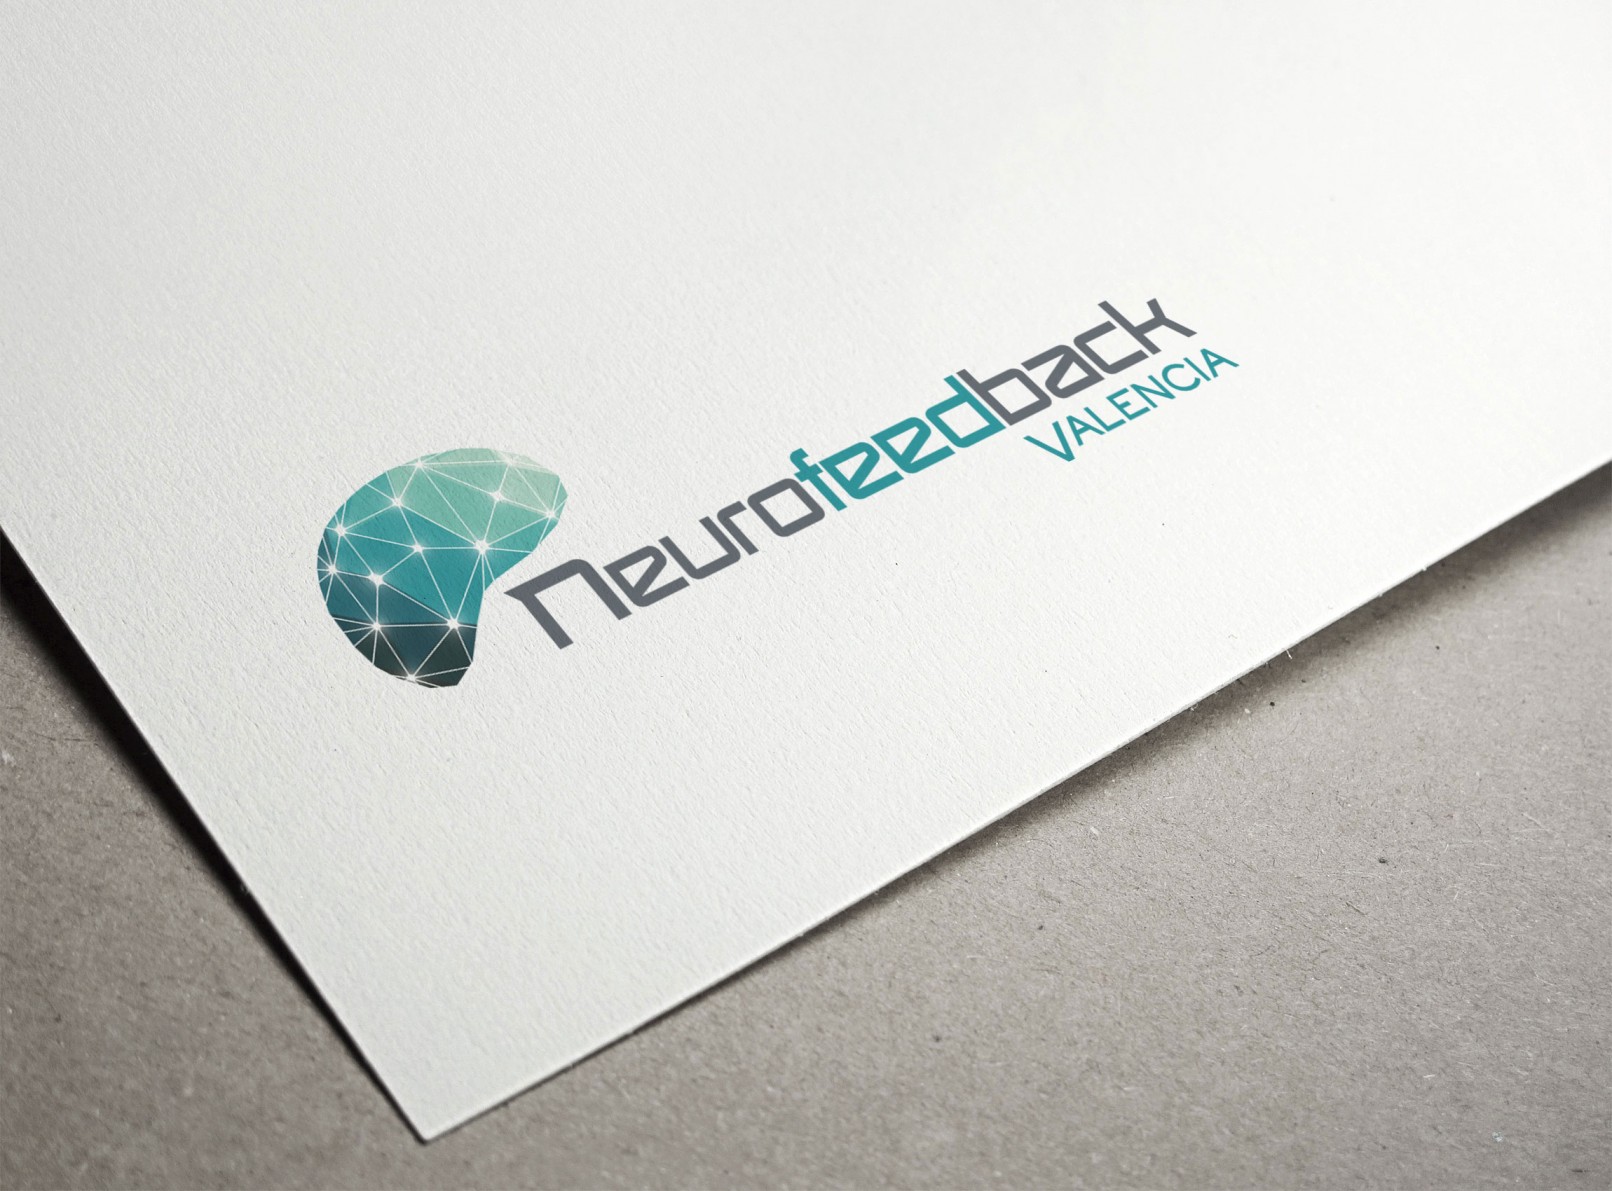 design-diseno-logotipo-papel-neurofeedback-vlc